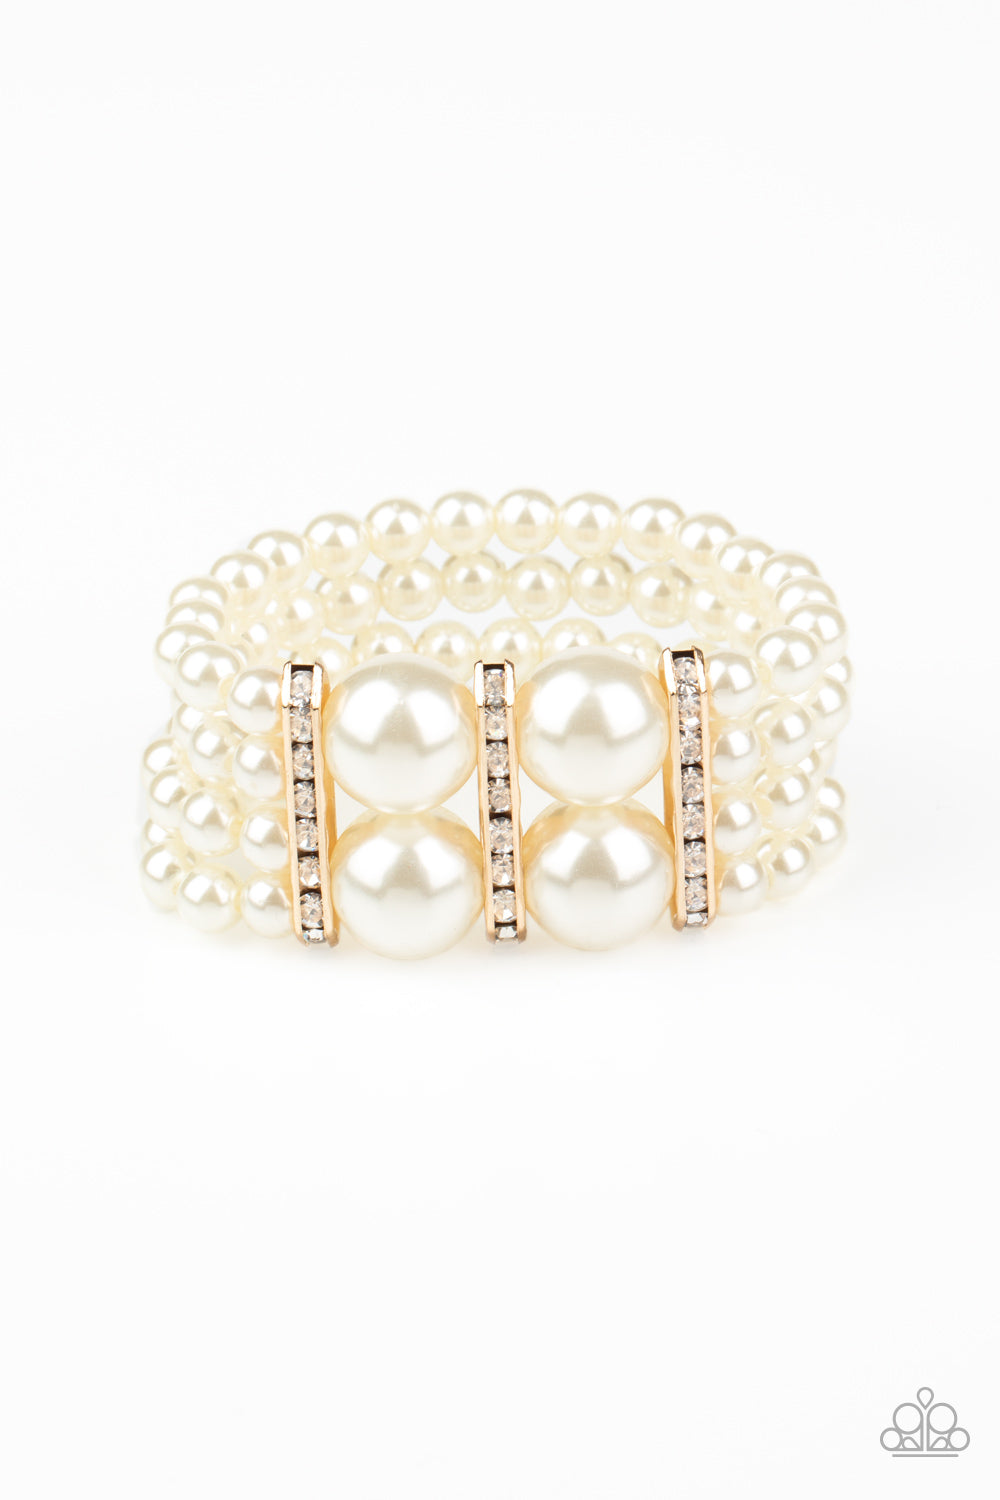 Romance Remix Gold Pearl Bracelet - Paparazzi Accessories